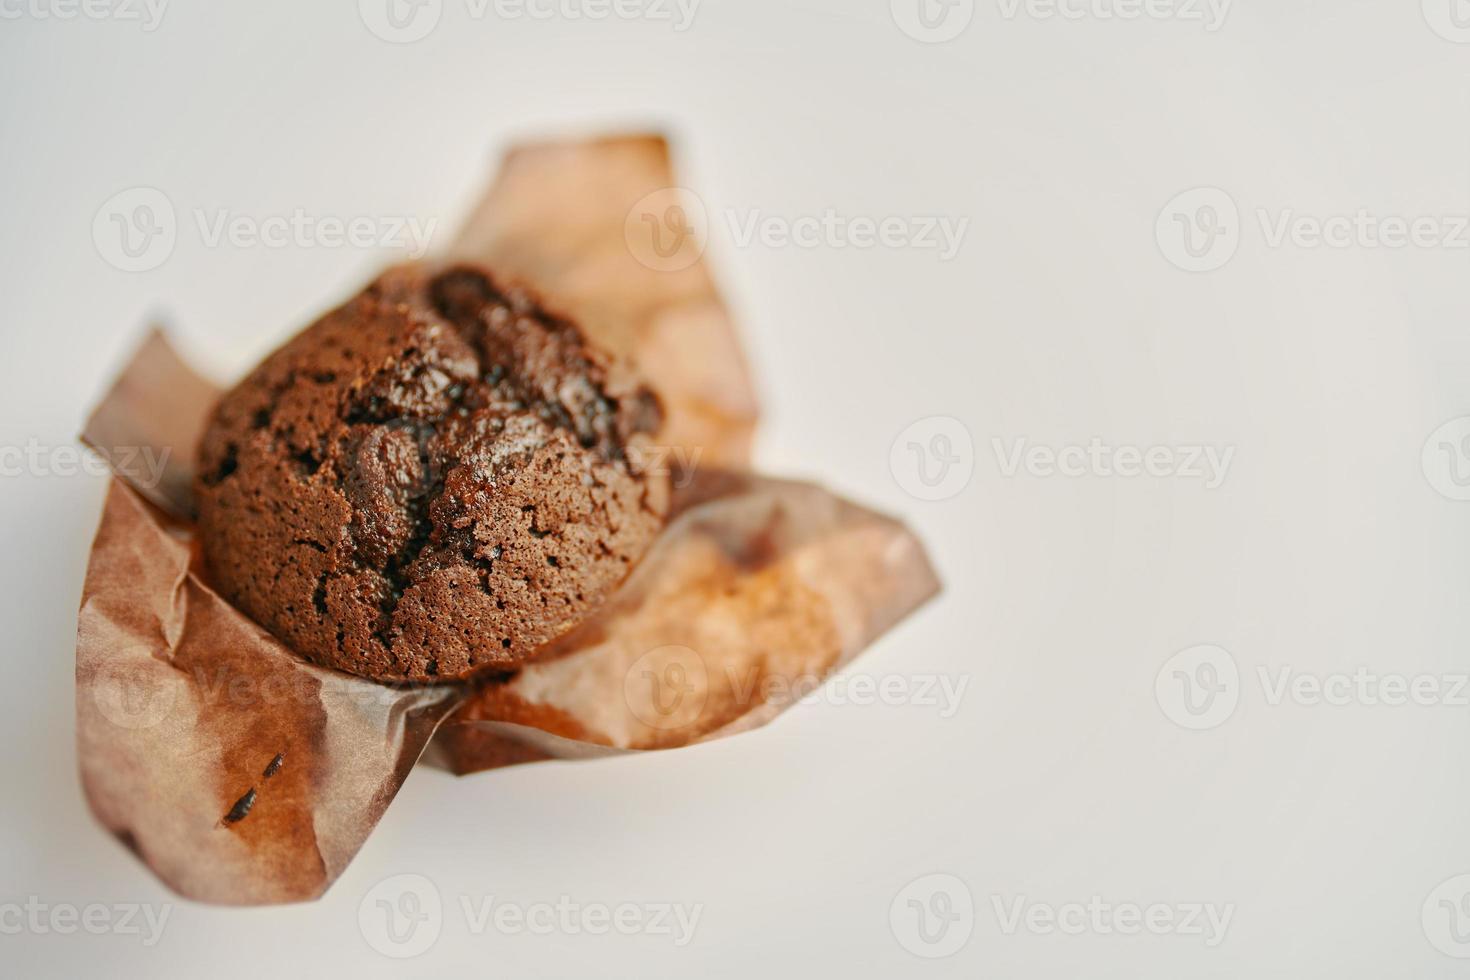 cupcake con chocolate amargo en envoltorio de papel. foto